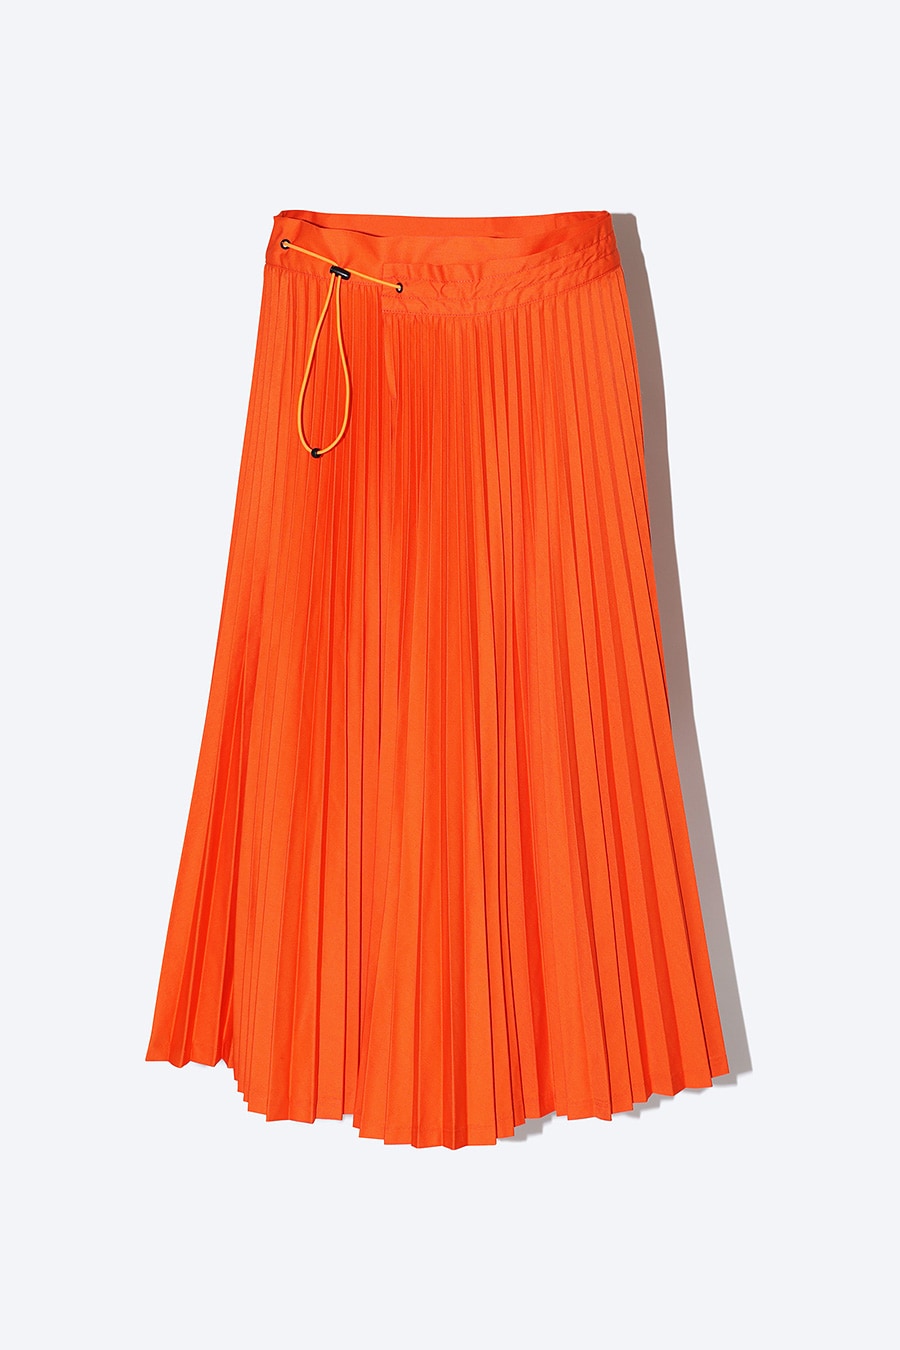 プリーツスカート 25,300円 オレンジ、グレー、ブラックの3色展開。